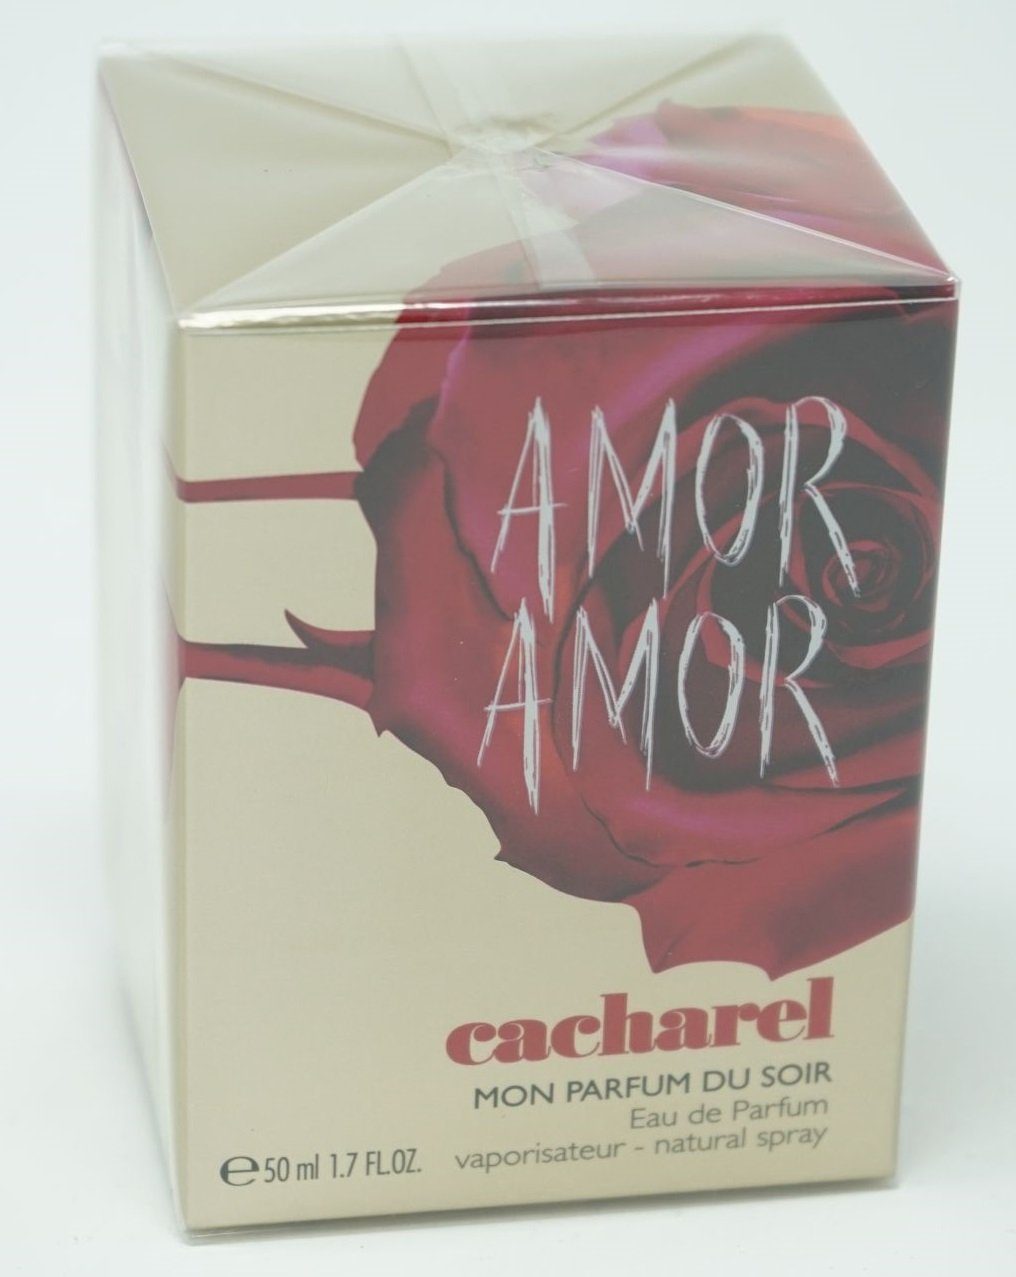 CACHAREL Eau de Amor Spray de Amor Parfum Parfum 50 Eau Cacharel Soir du ml Mon Parfum